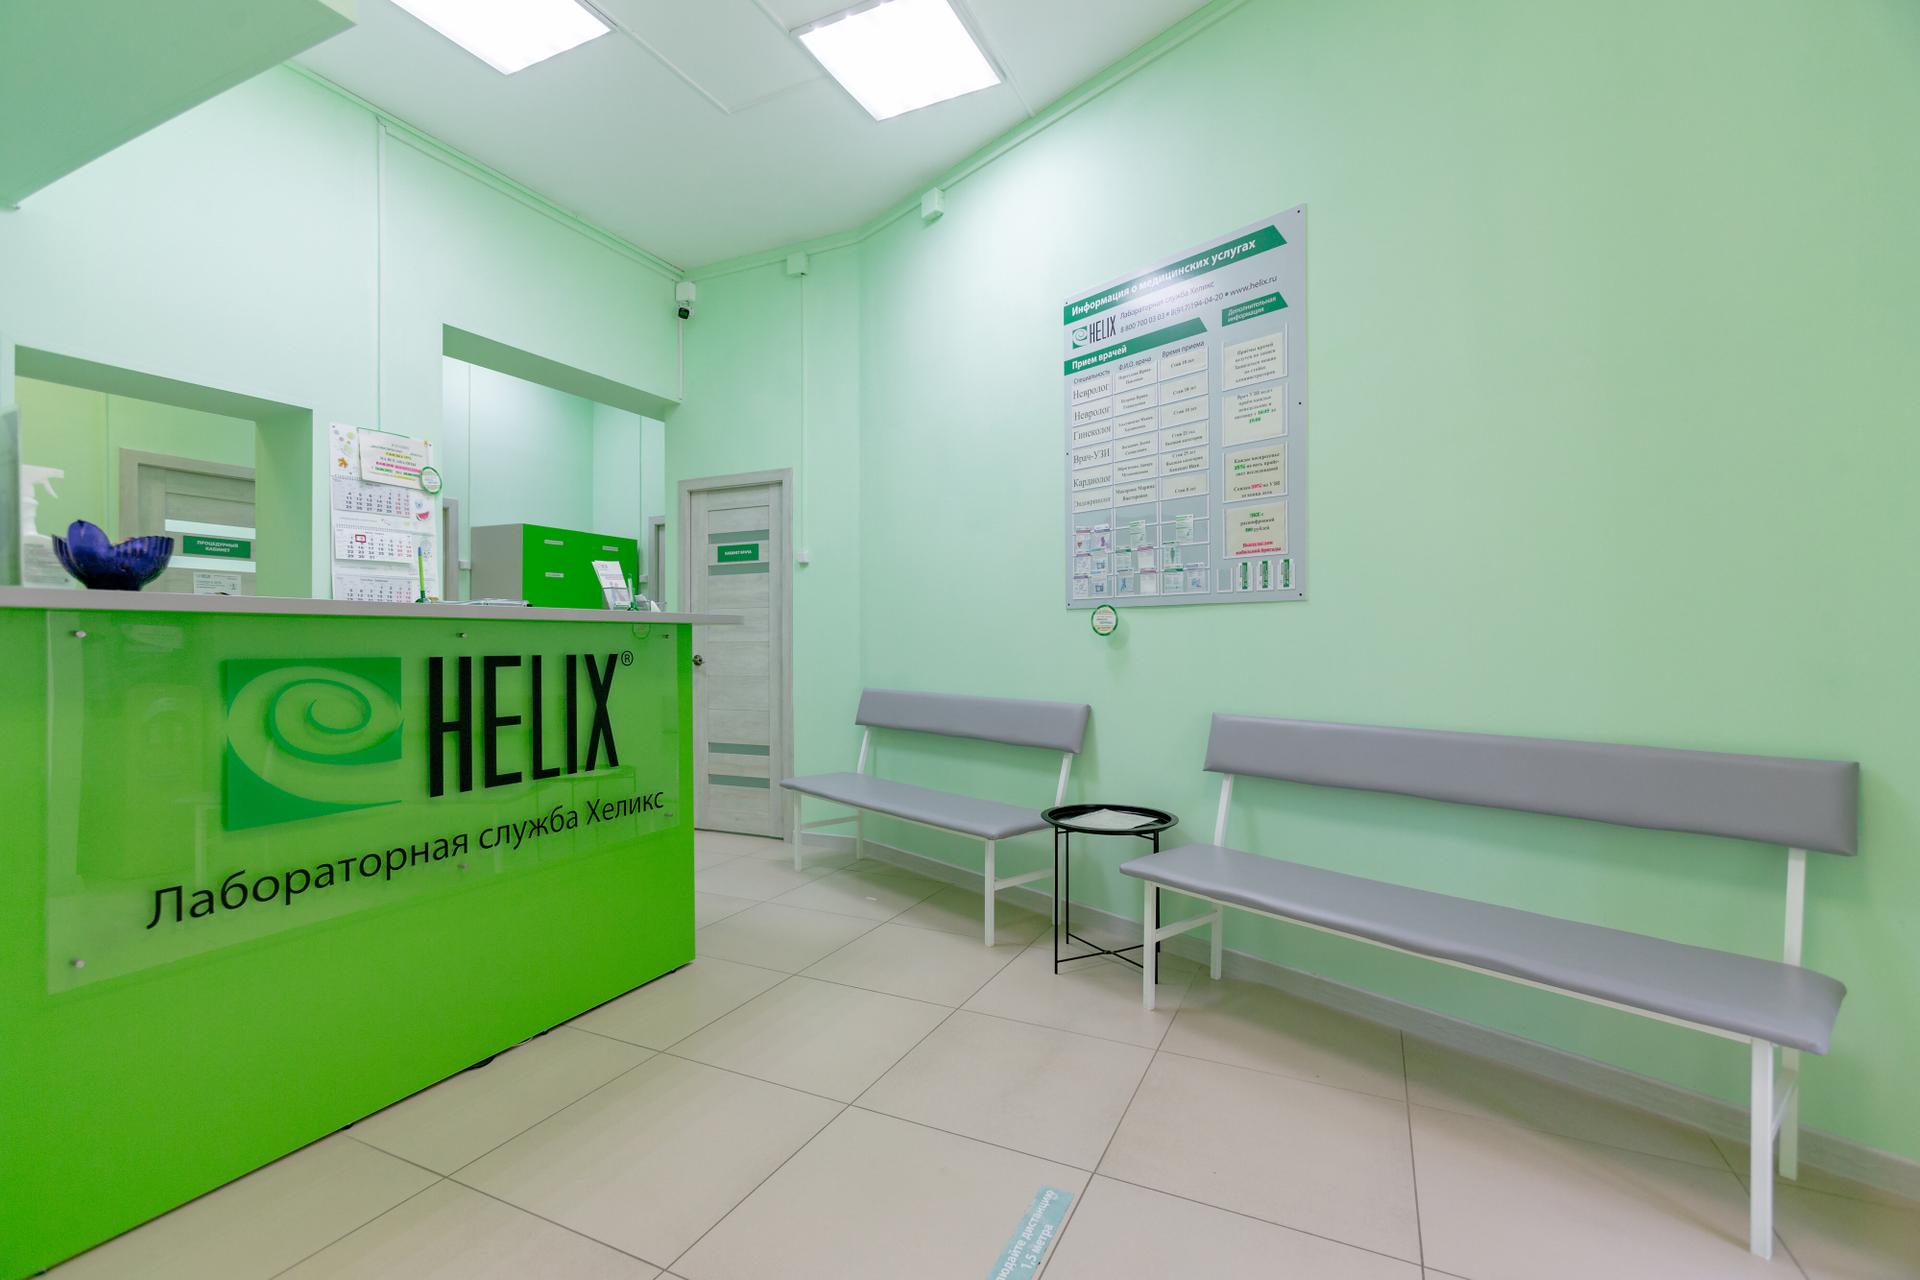 Телефоны центра хеликс. Helix лаборатория. Хеликс Томск. Хеликс Тверь.